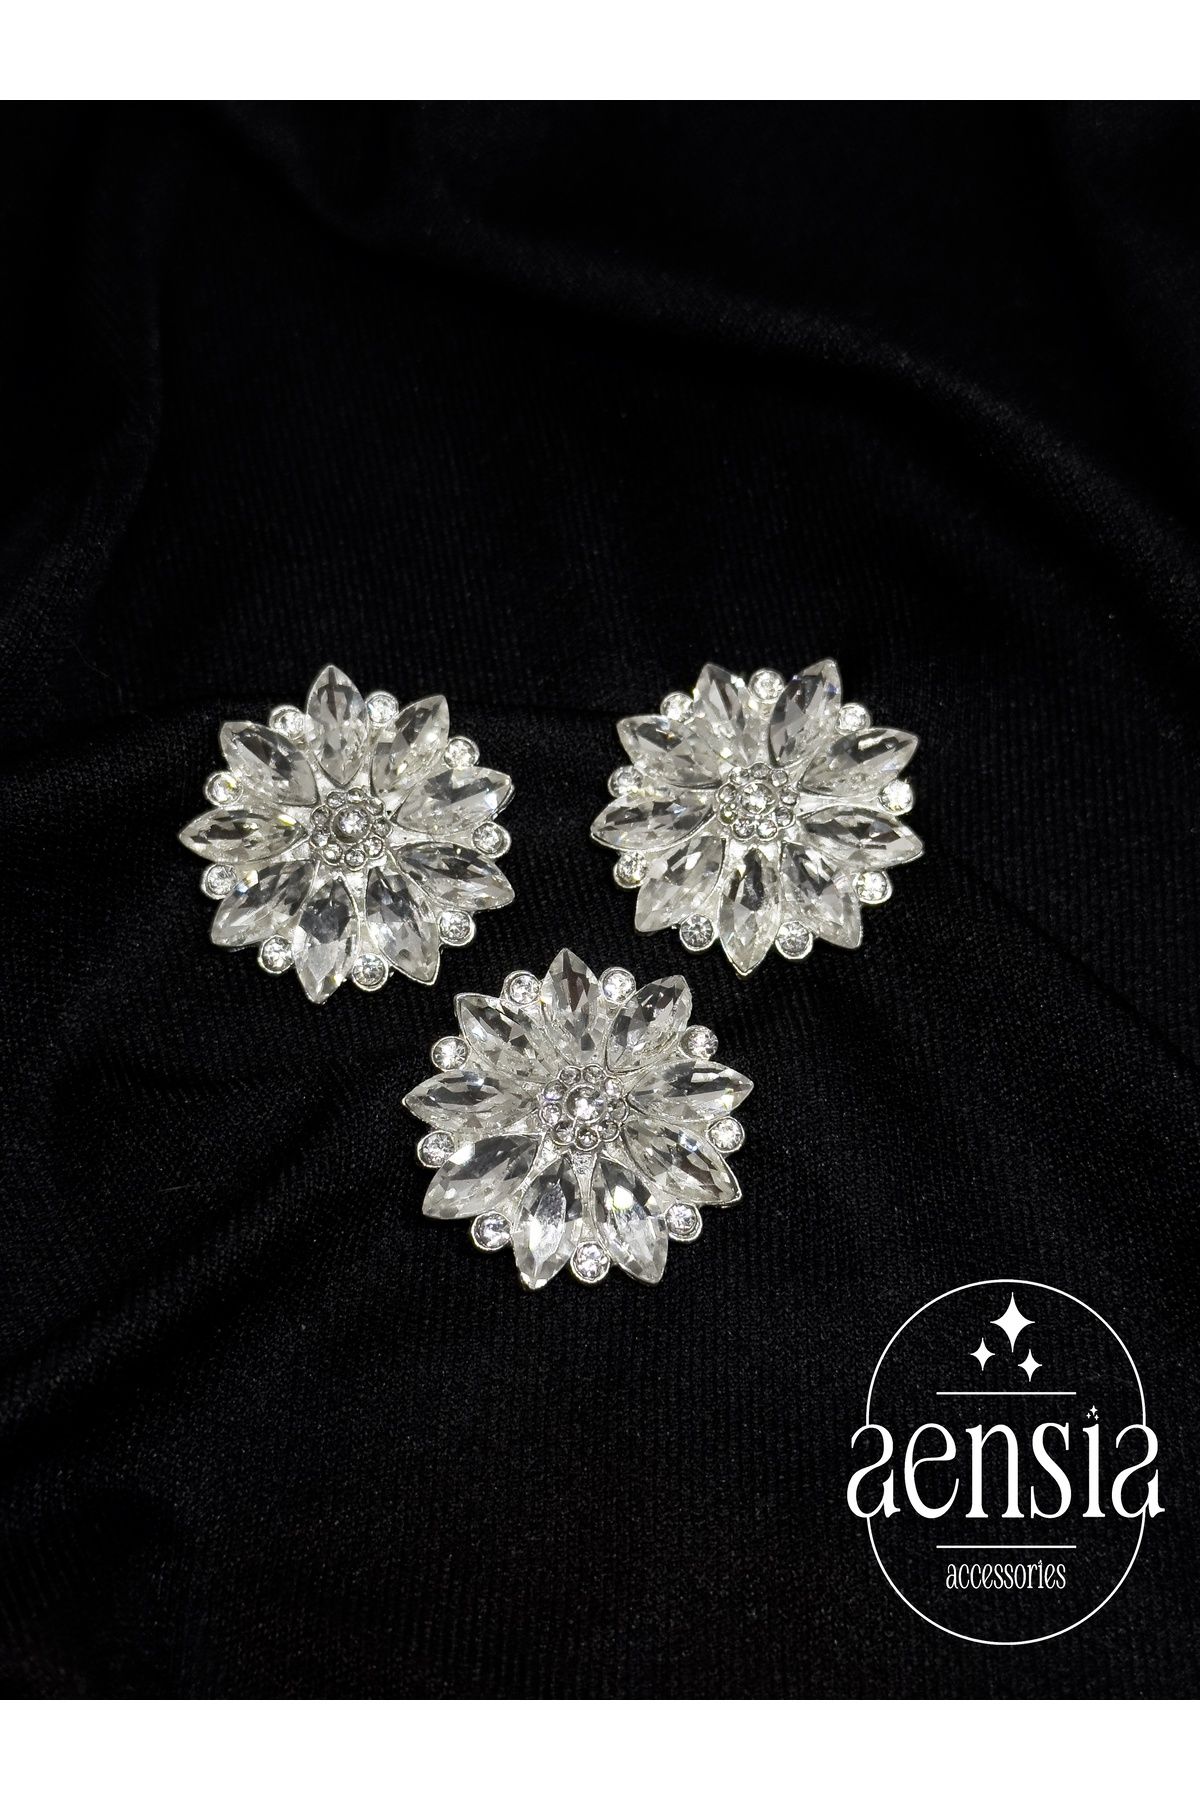 aensia Gümüş Taşlı Çiçek Model Metal Düğme Kaban Ceket Düğme Özel Tasarım Pinterest Düğmesi 2,79 CM - 3Lü